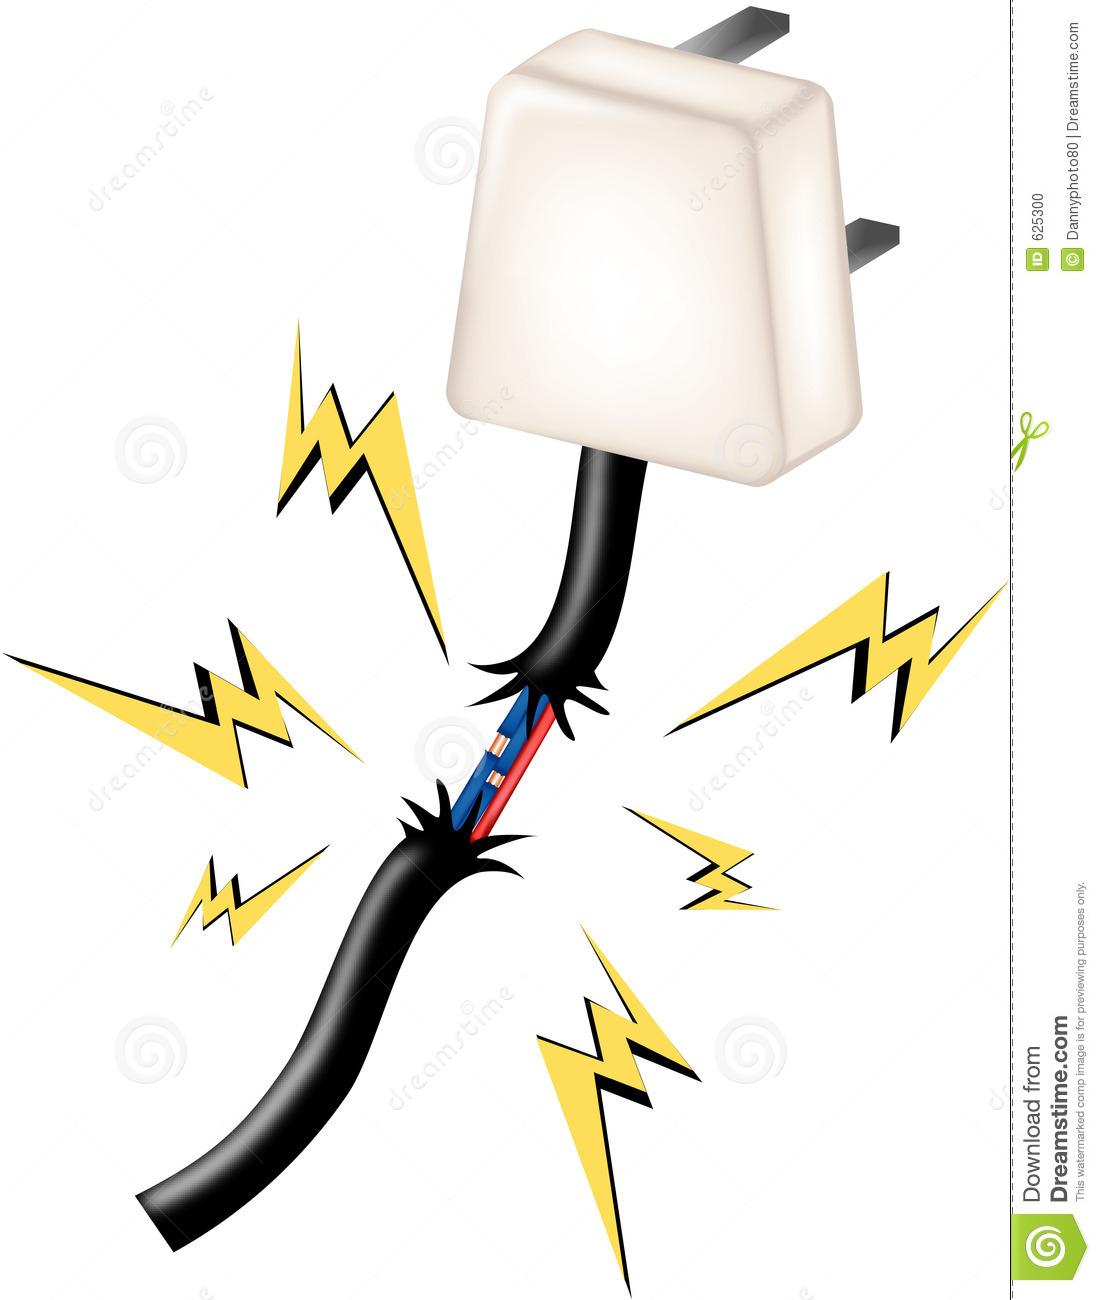 electricity clipart dangerous